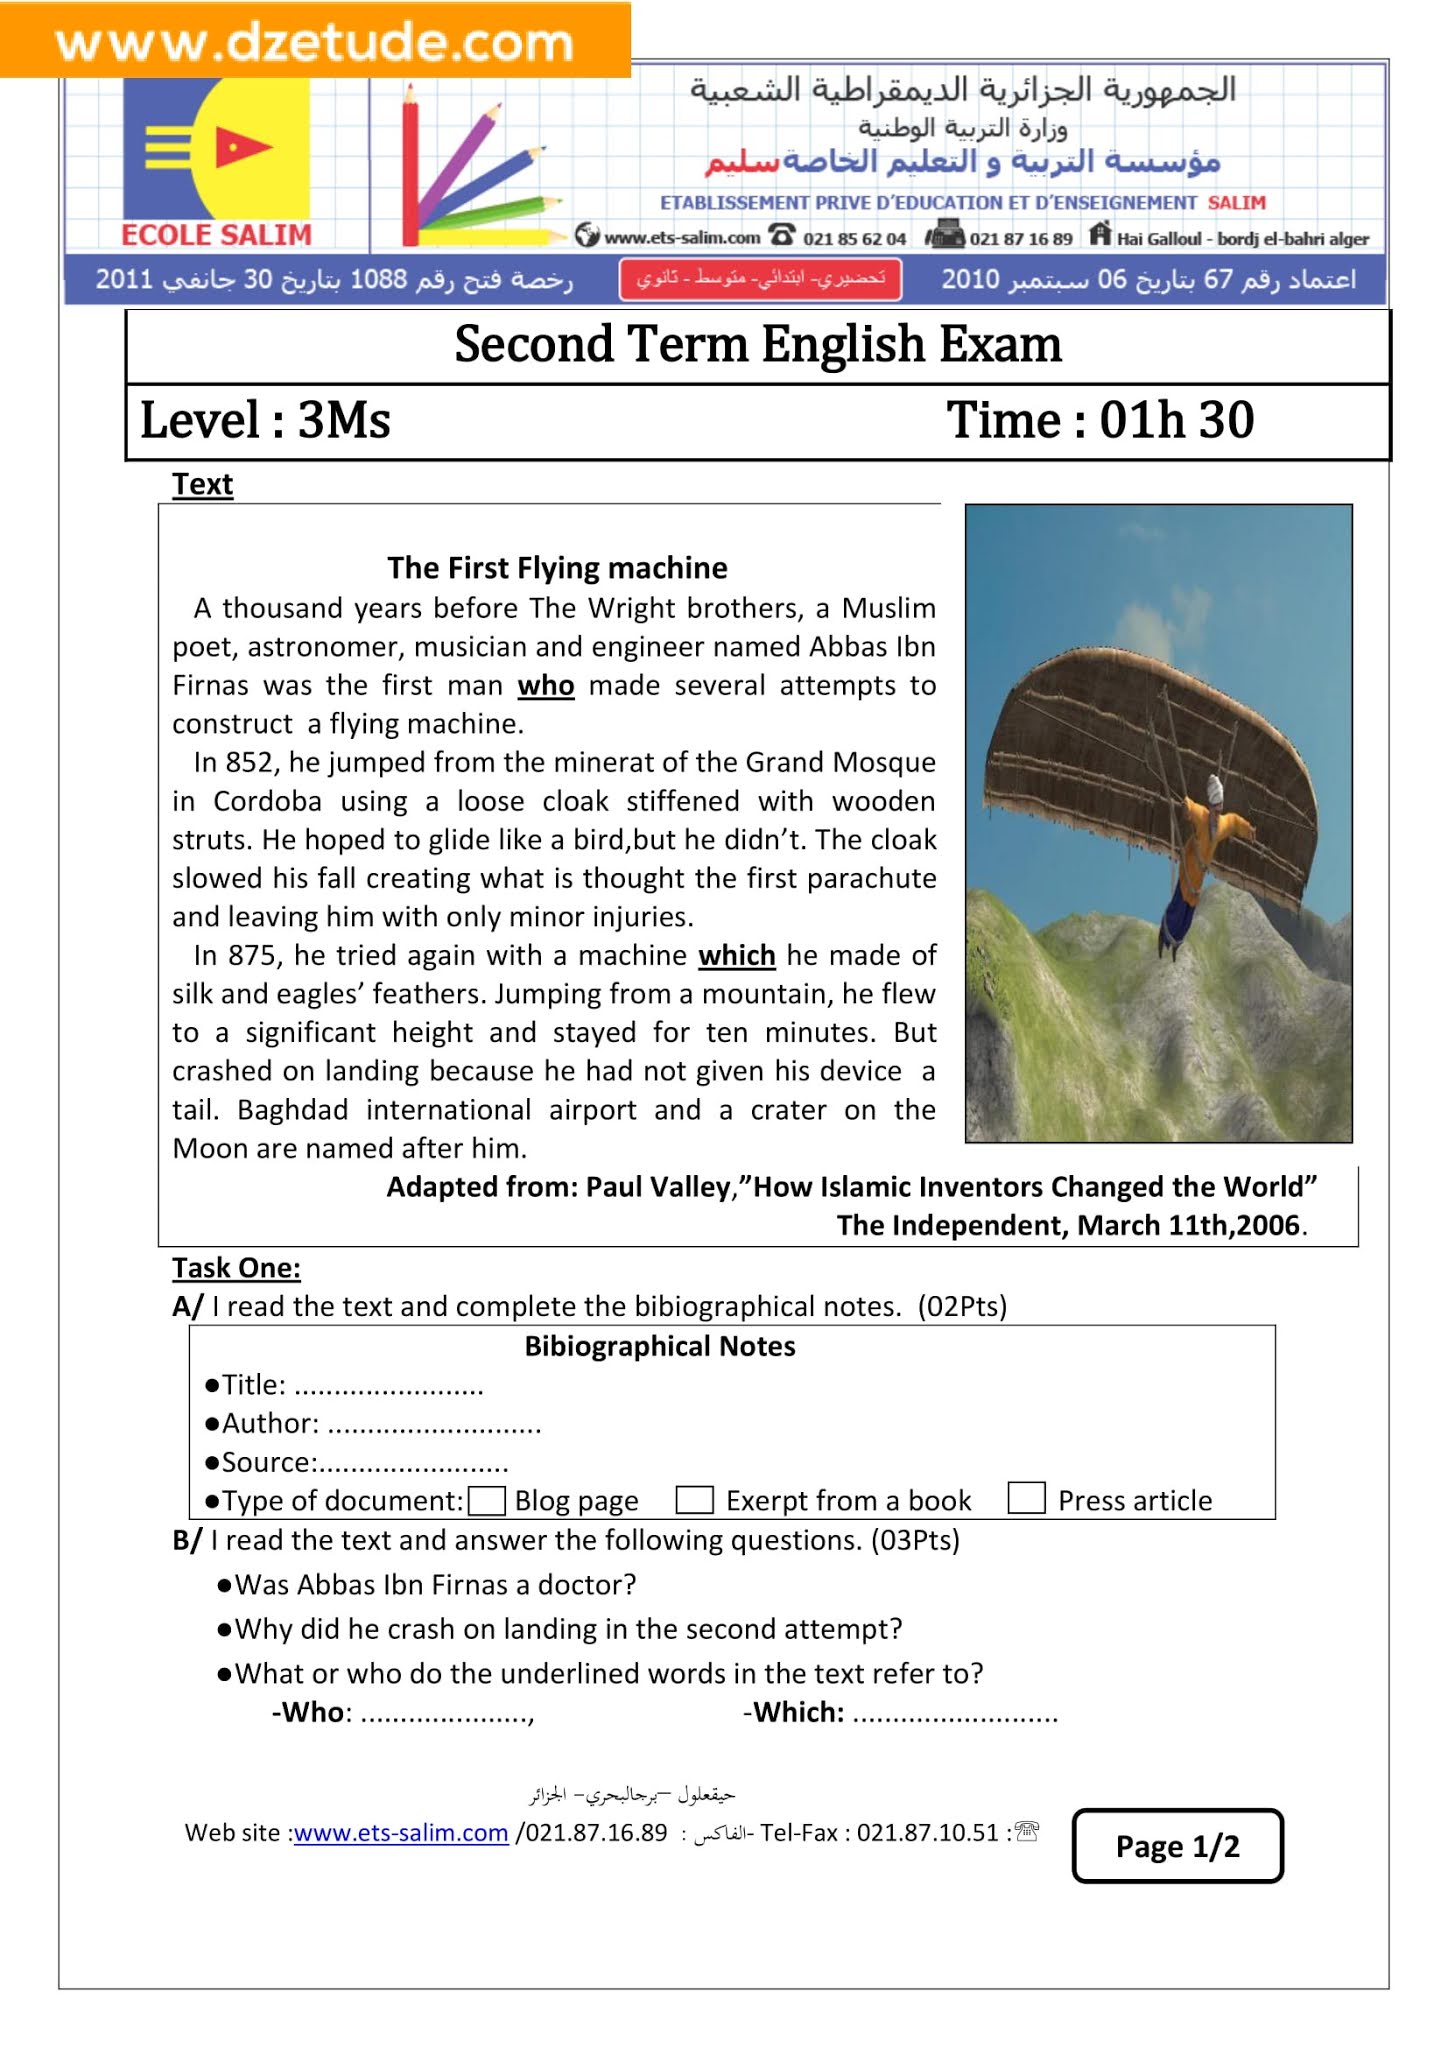 إختبار اللغة الإنجليزية الفصل الثاني للسنة الثالثة متوسط - الجيل الثاني نموذج 2